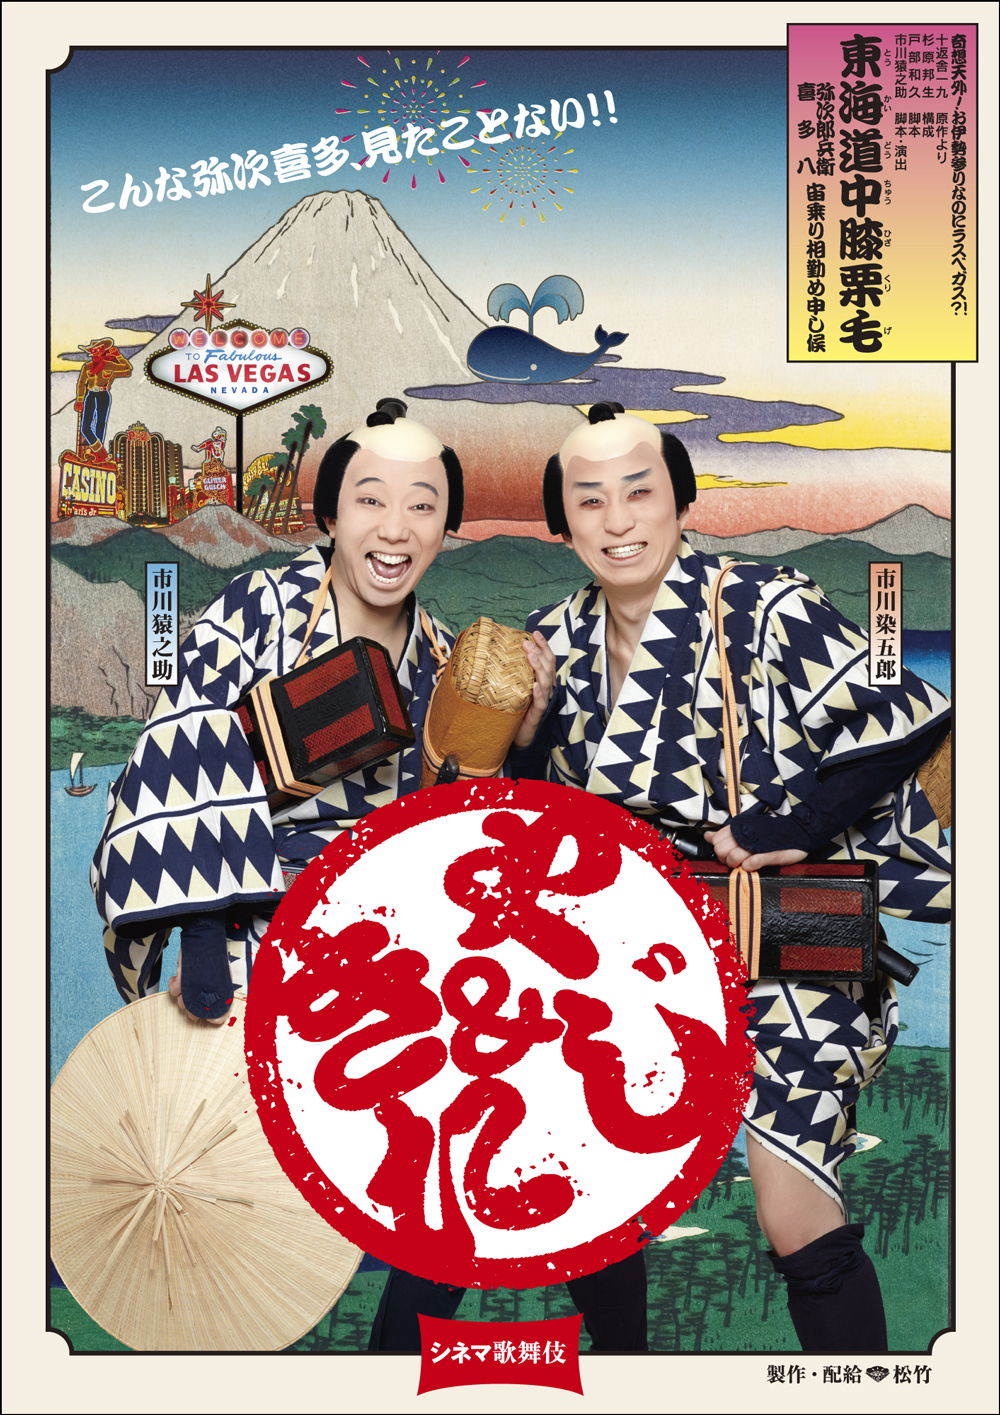 シネマ歌舞伎『東海道中膝栗毛〈やじきた〉』特別上映と《月イチ歌舞伎》『喜撰／棒しばり』スタート